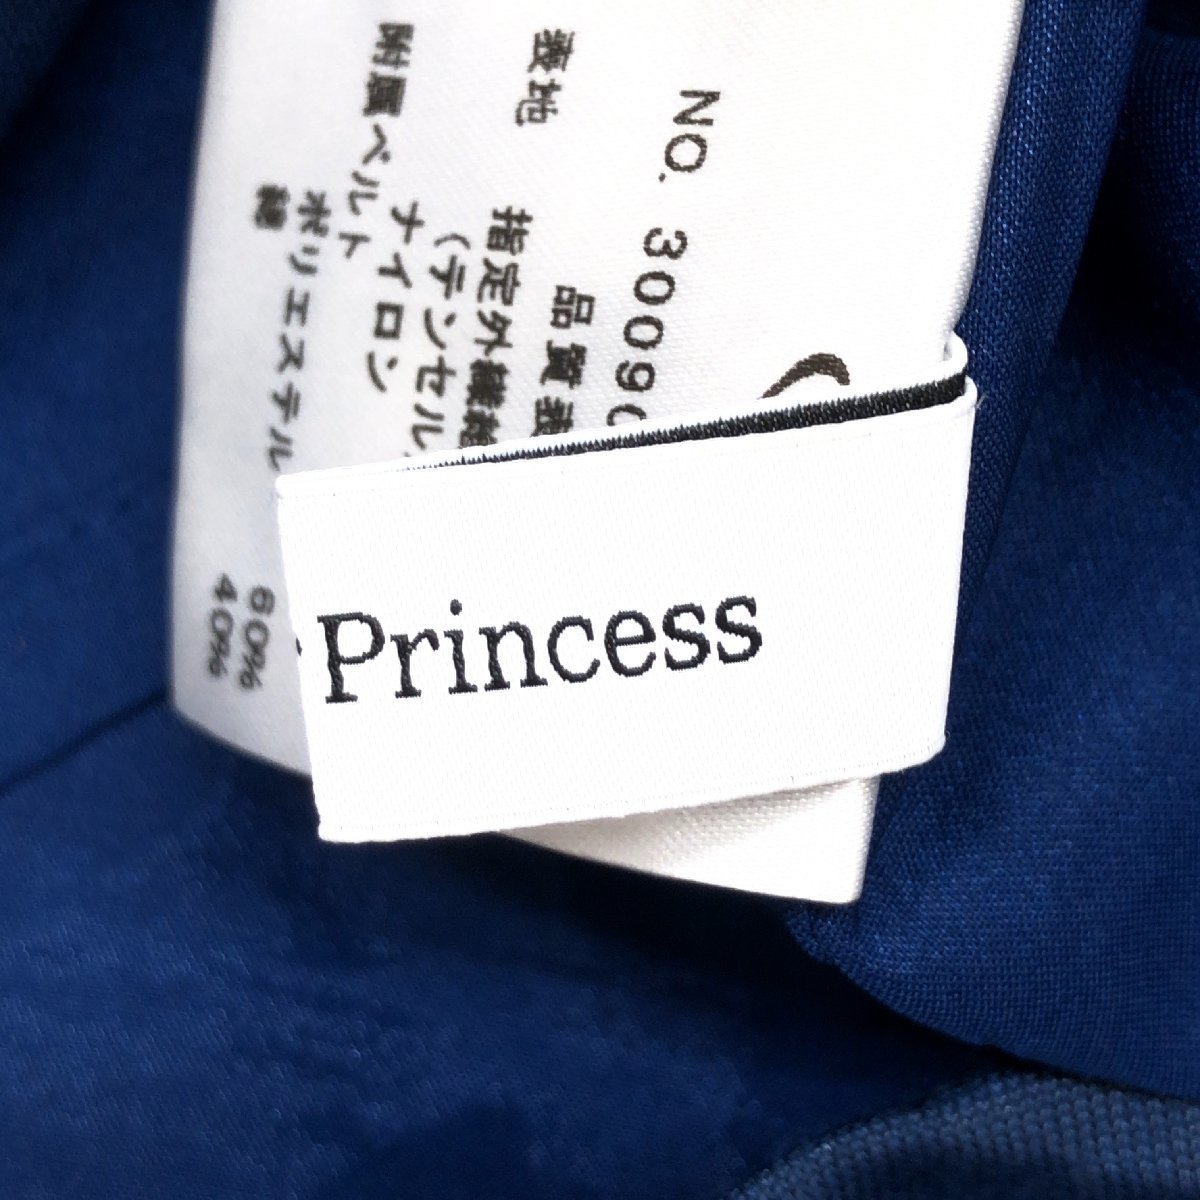 Dear Princess ディアプリンセス フリル装飾 ドレス ワンピース M相当 濃紺 ネイビー 日本製 ノースリーブ チュニック 国内正規品 女性用_画像3